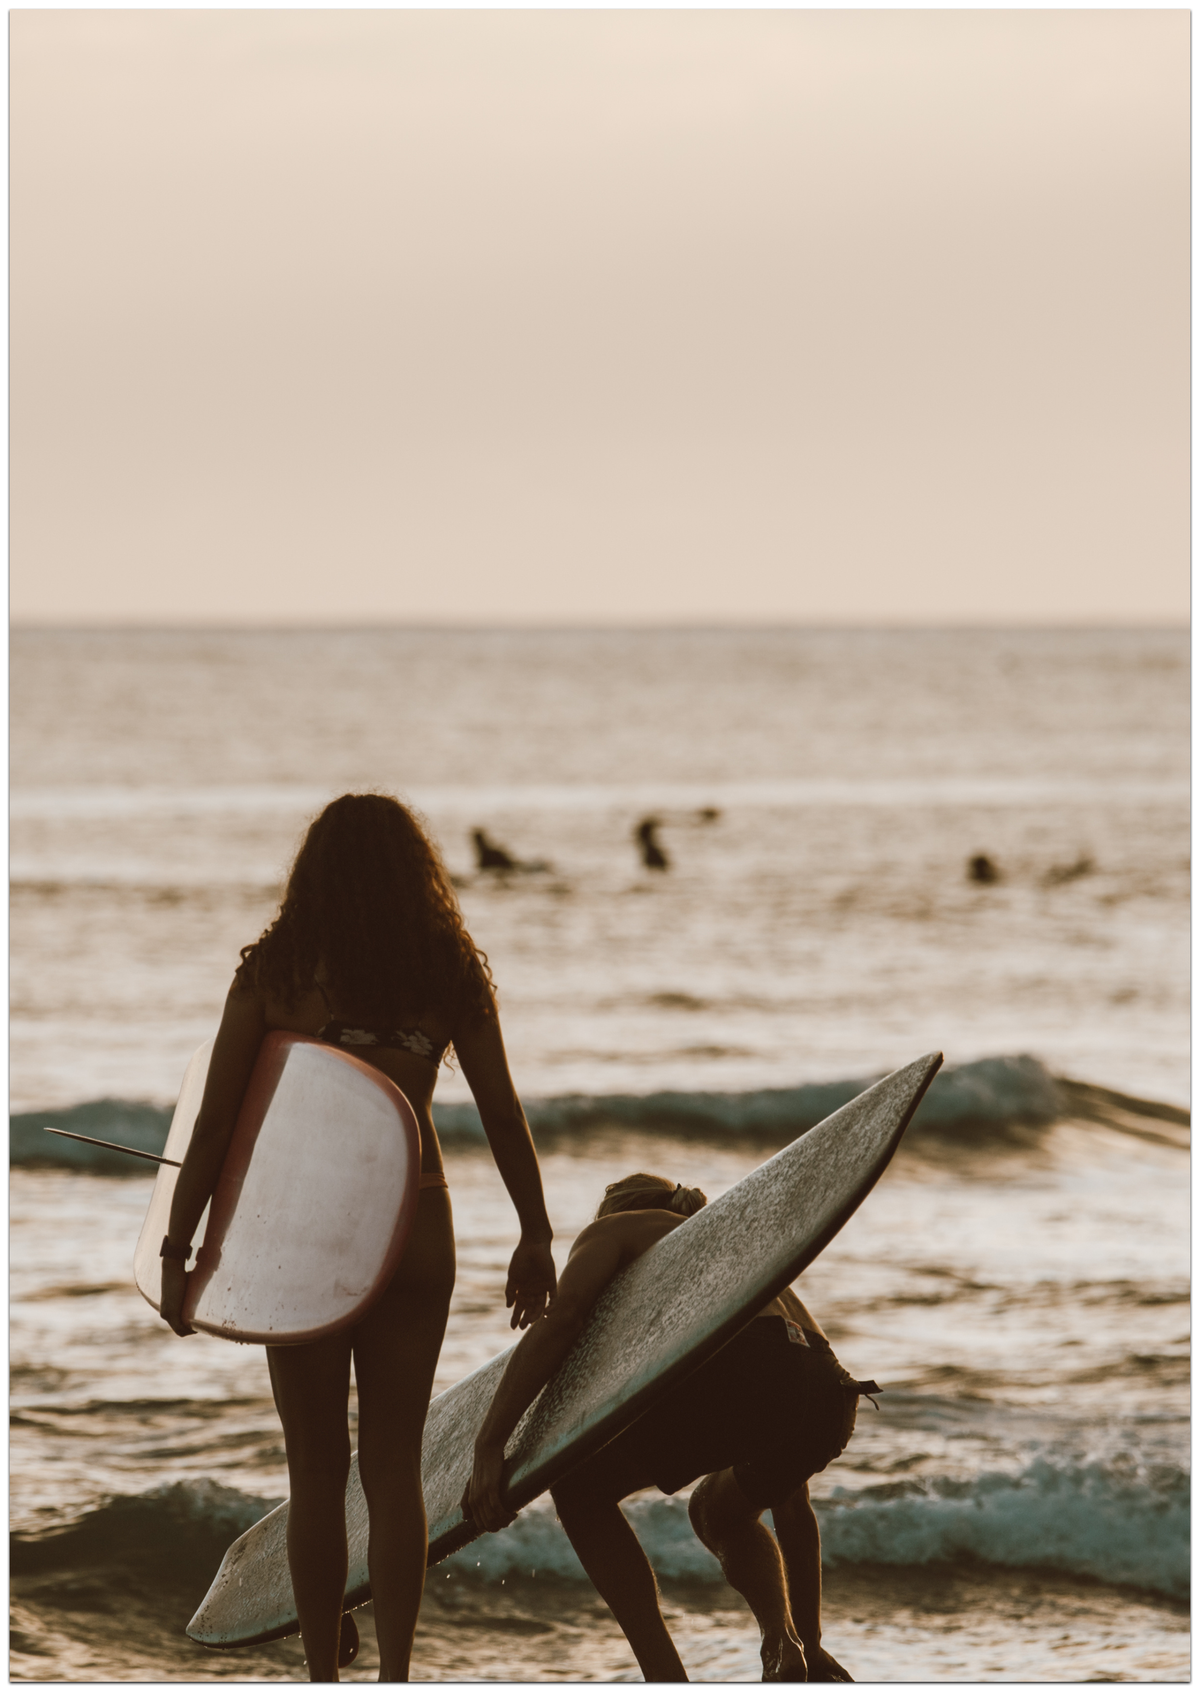 Vintage Surfer Poster